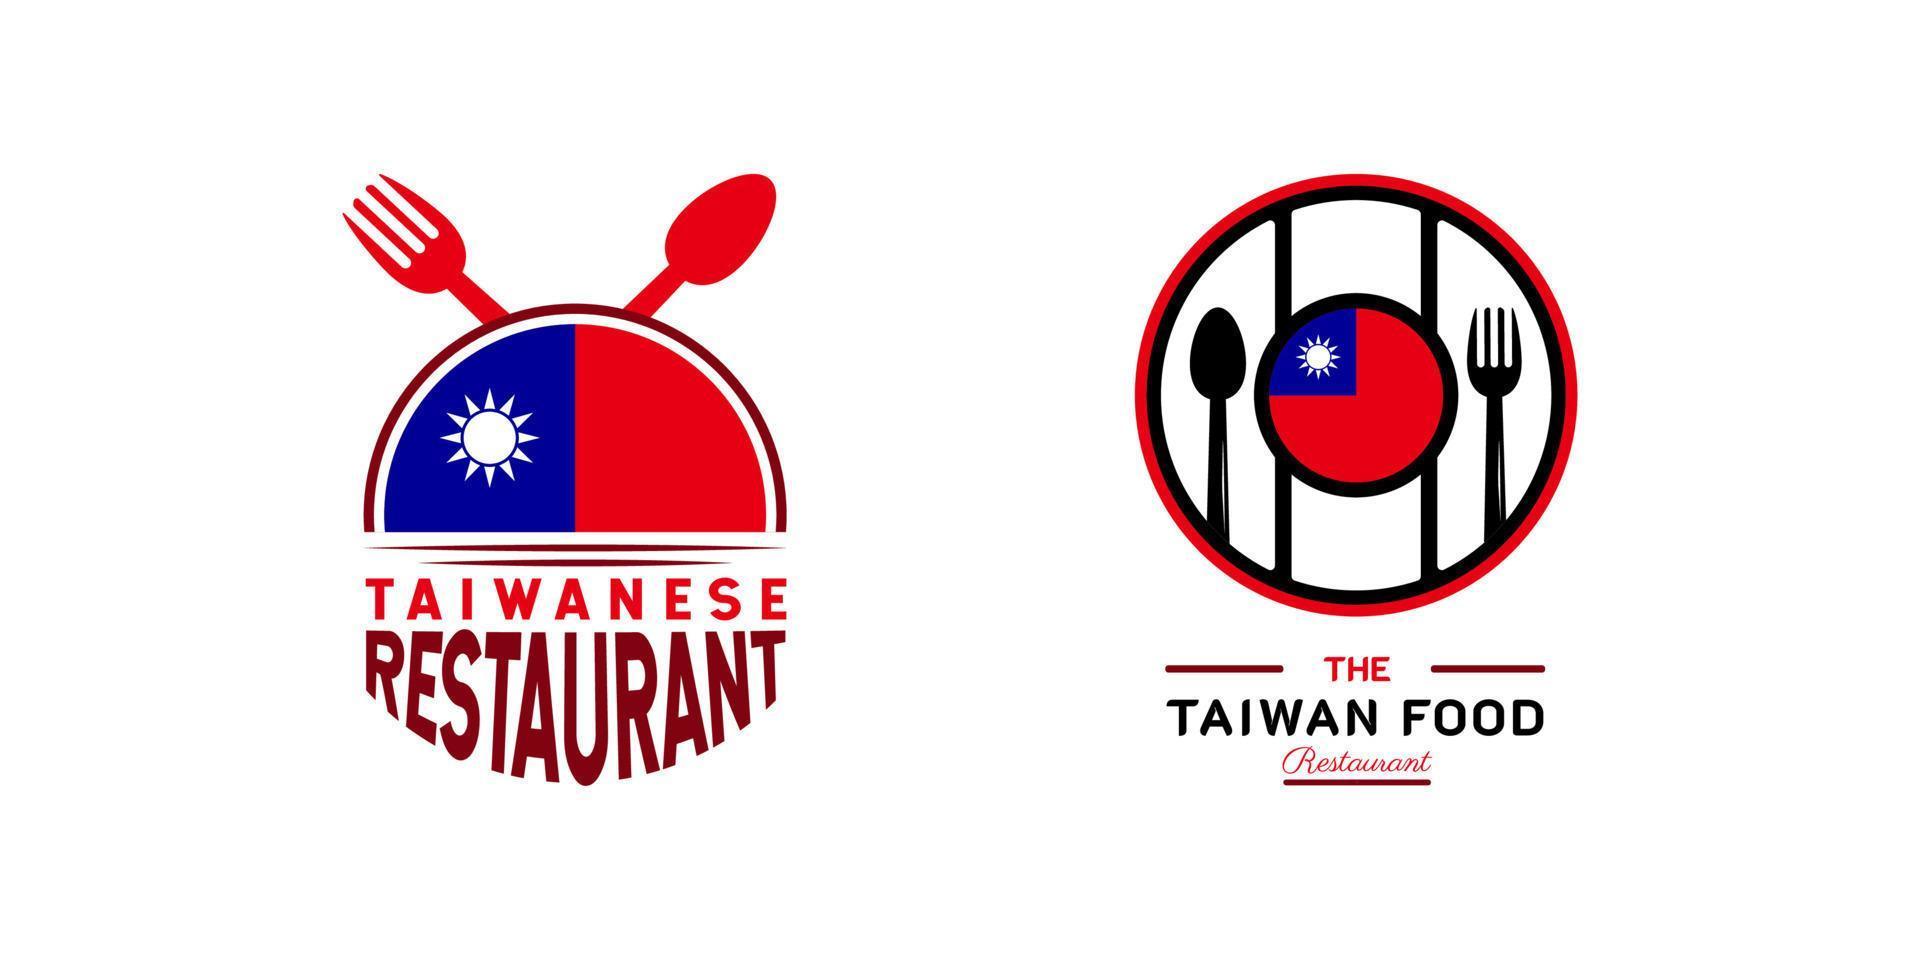 Taiwanees voedsel restaurant logo. Taiwan vlag symbool met zon, lepel en vork pictogrammen. luxe en premie logo illustratie vector